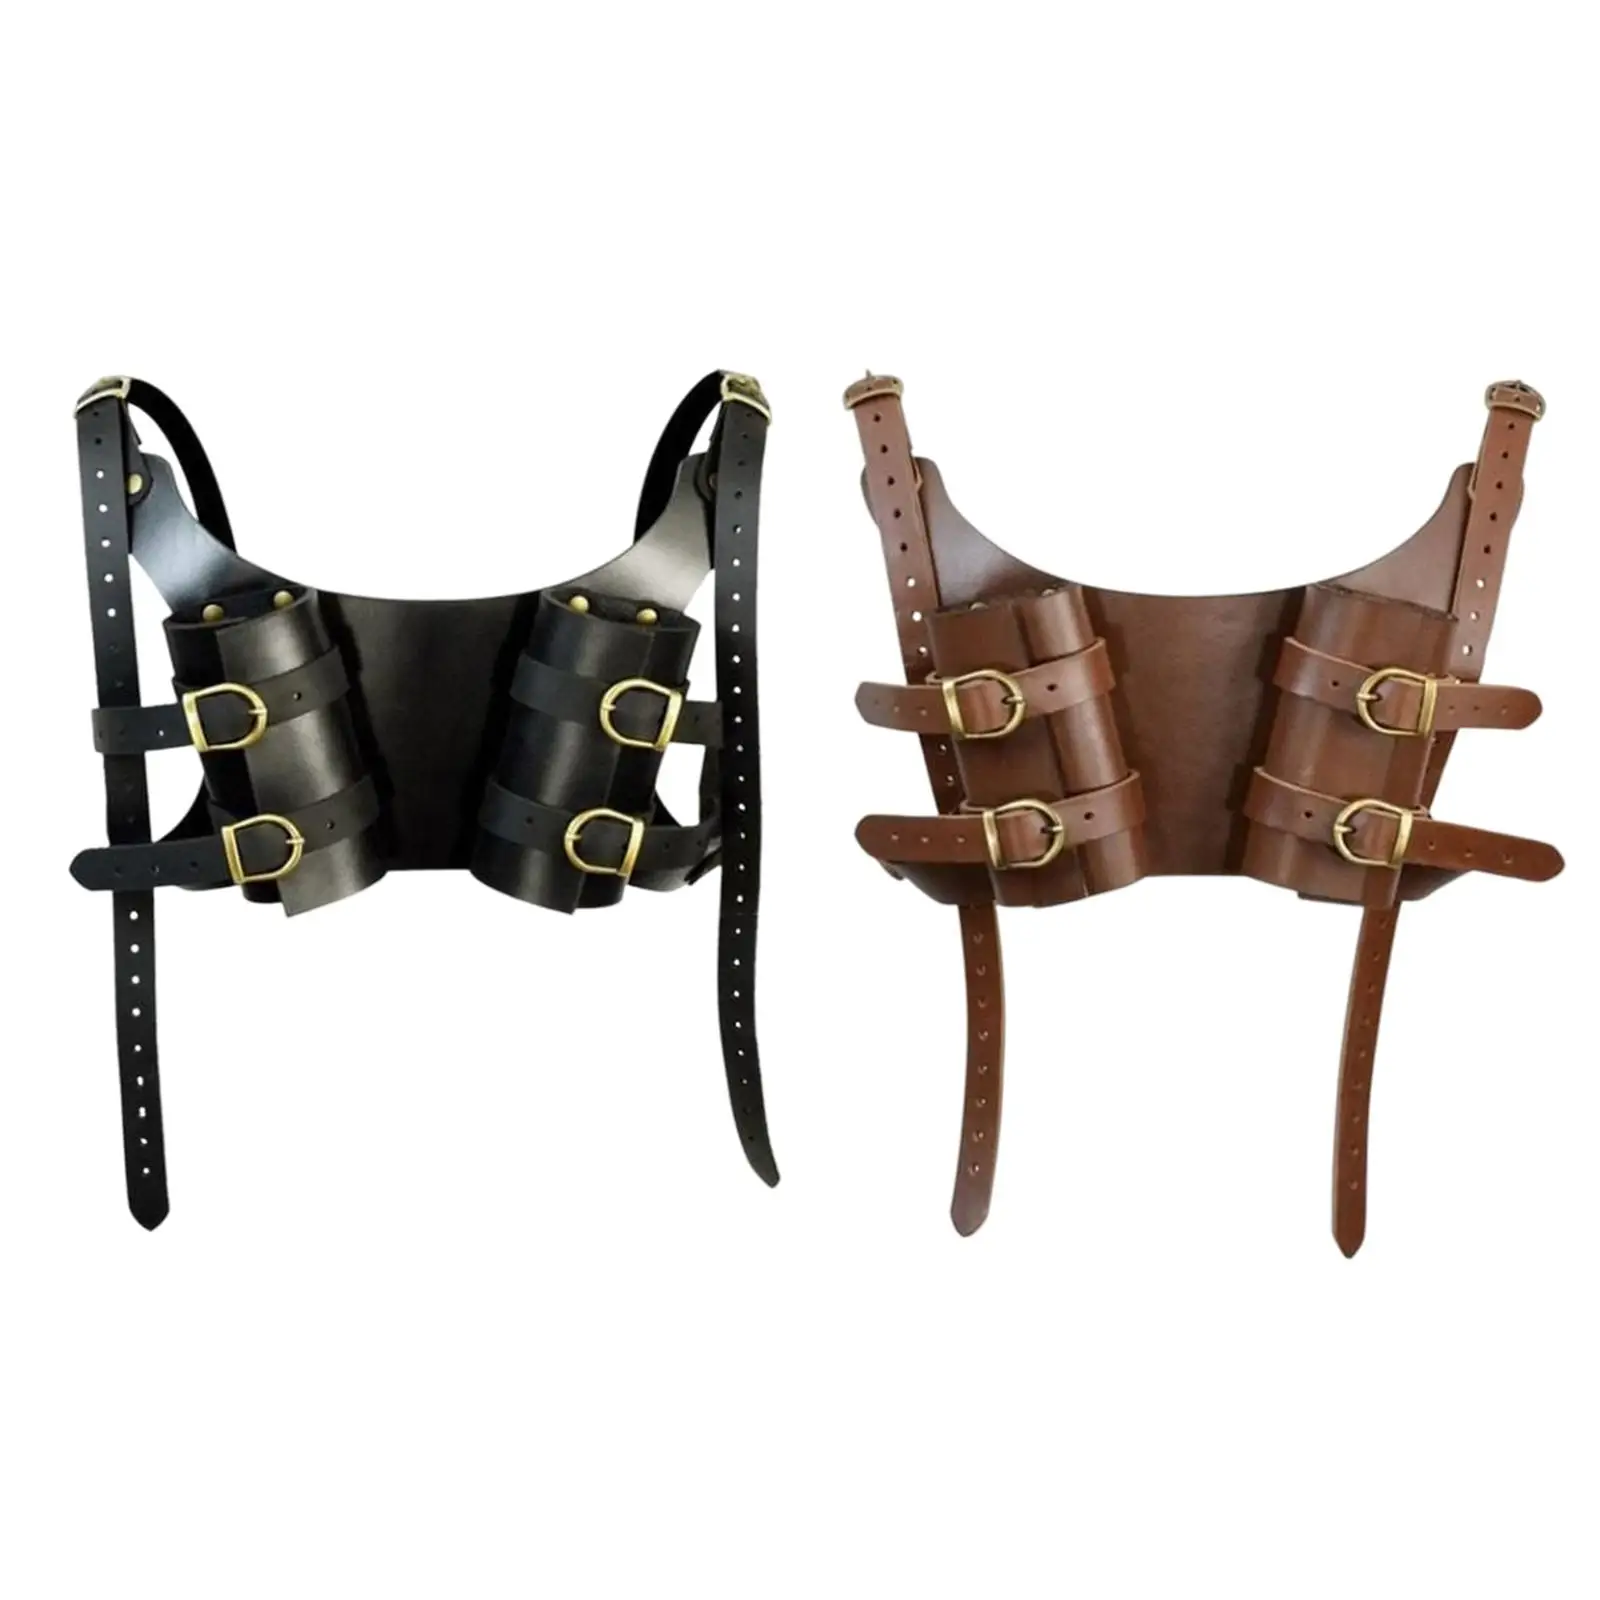 Double Medieval Shoulder Strap Shoulder Belt Adjustable Sheath for Costume